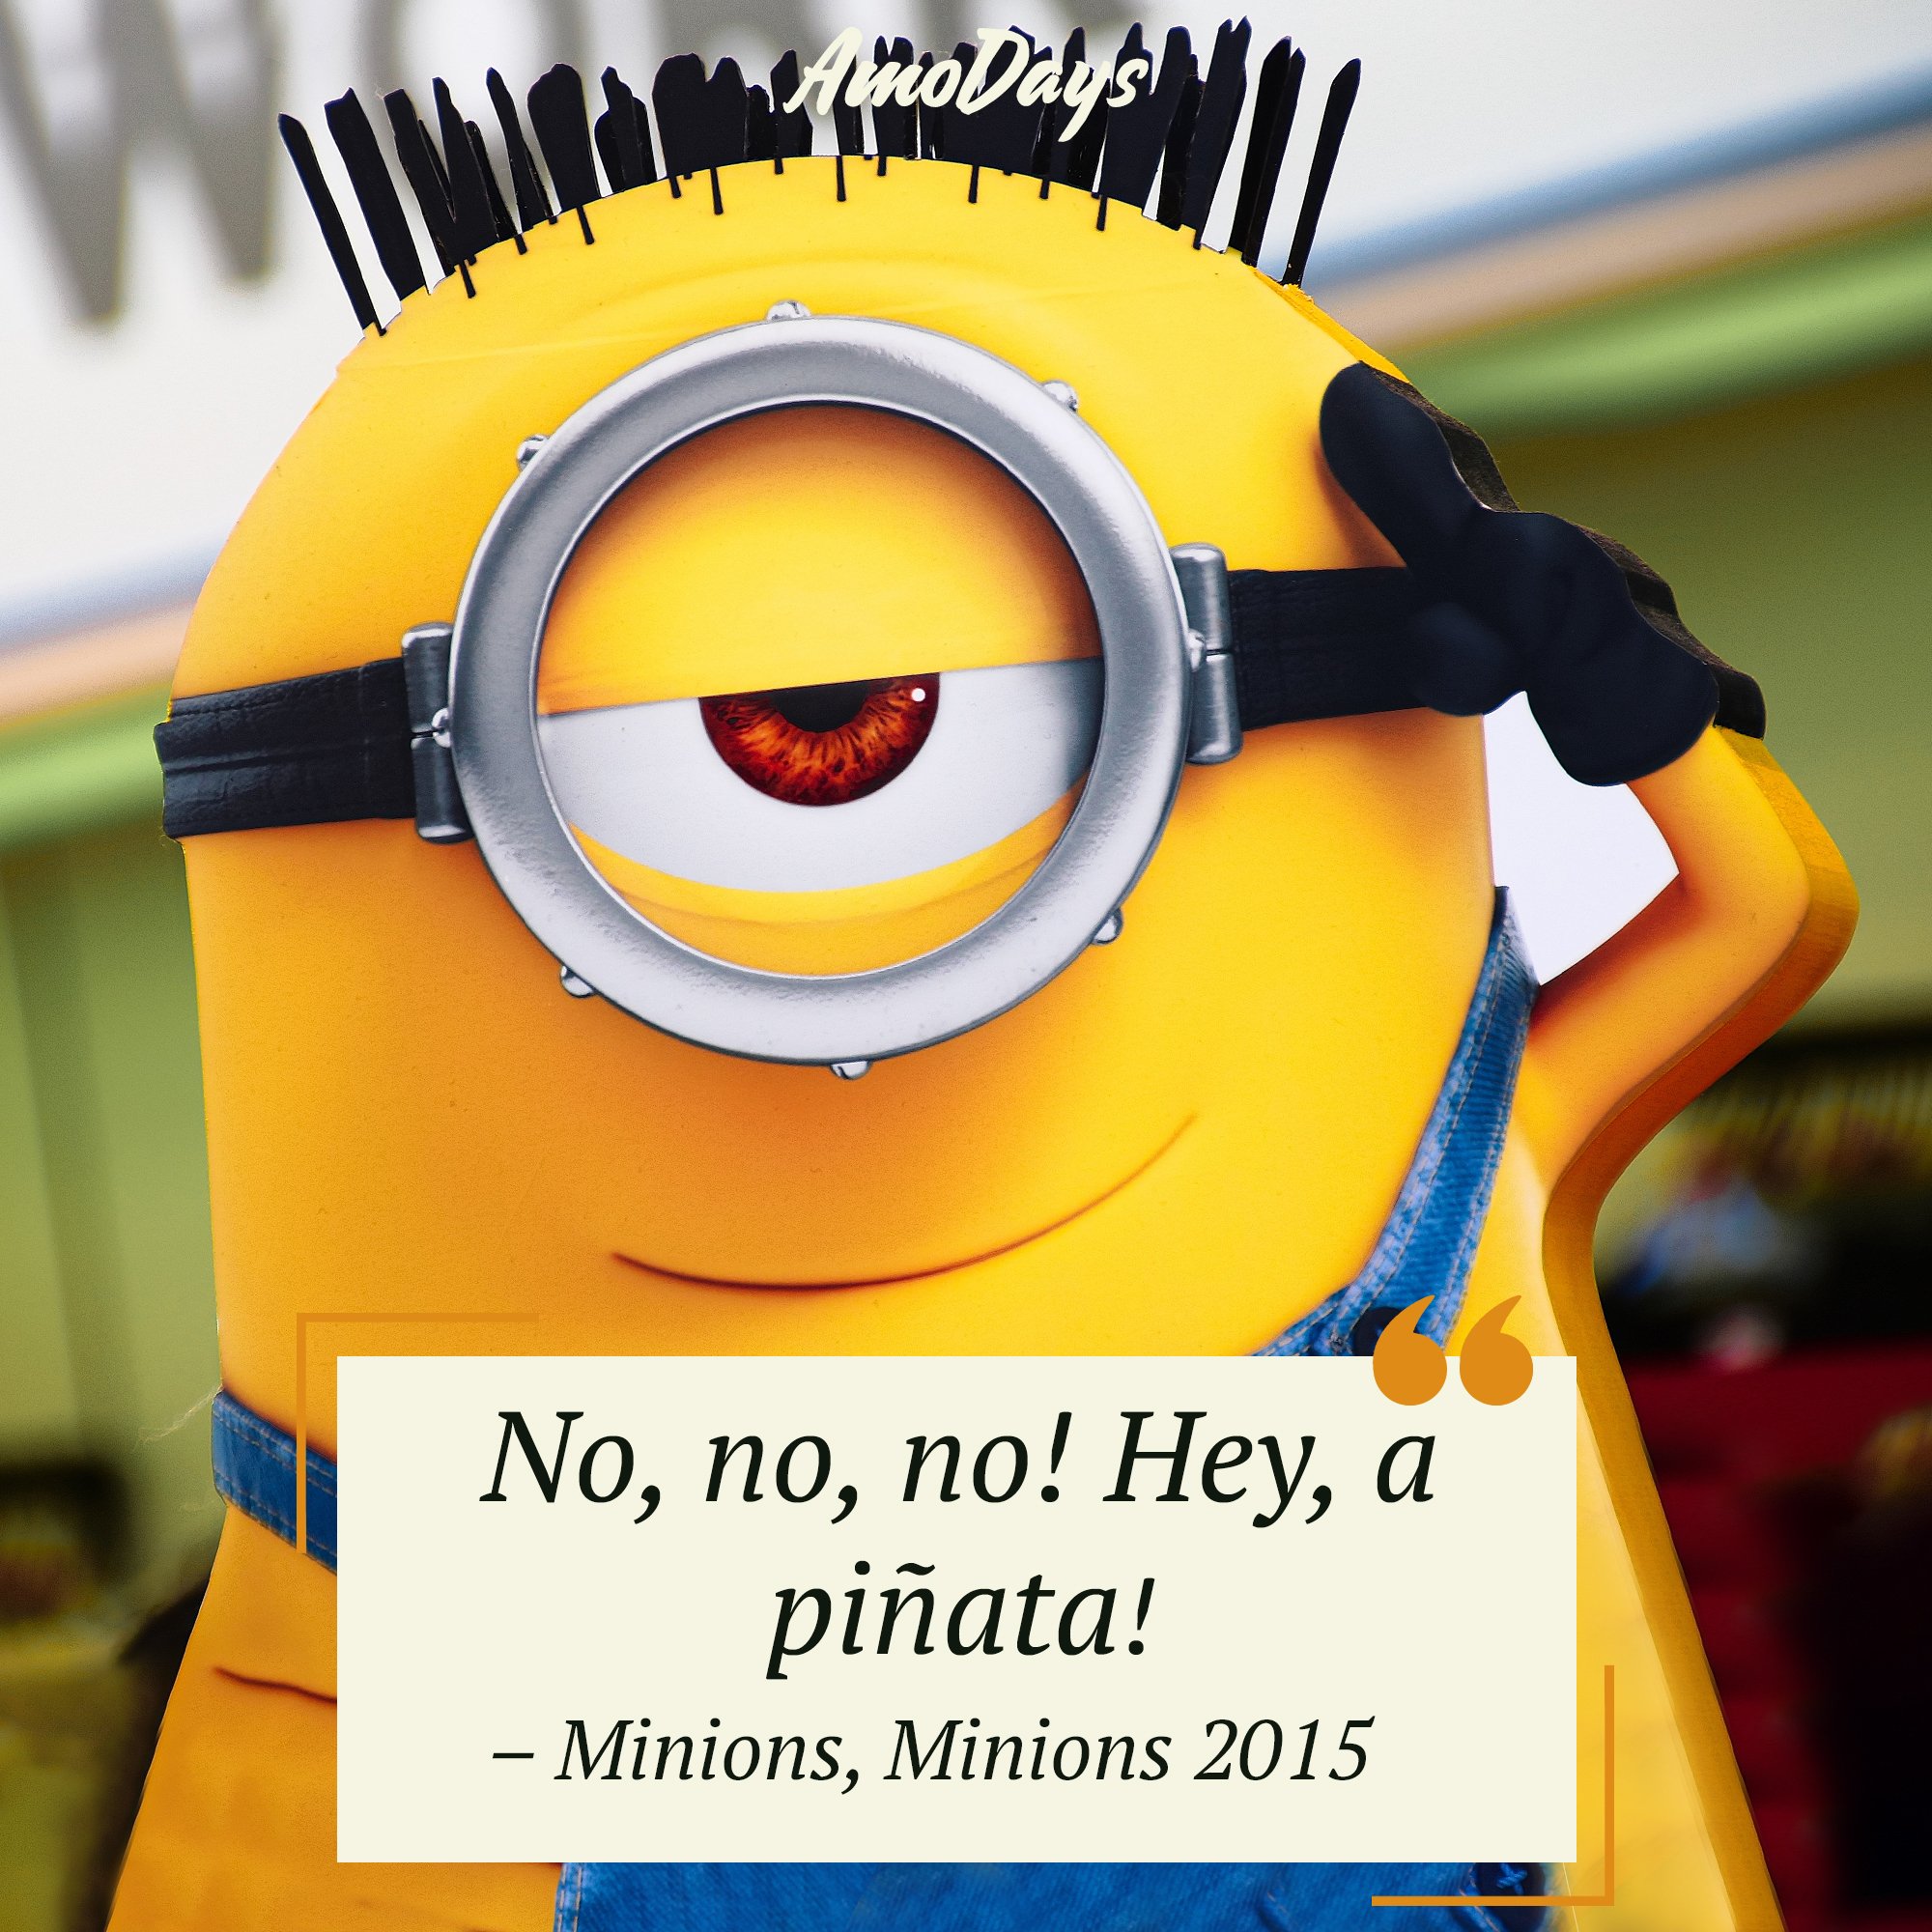 Minions' quote in "Minions" 2015 “No, no, no! Hey, a piñata!” | Image: AmoDays